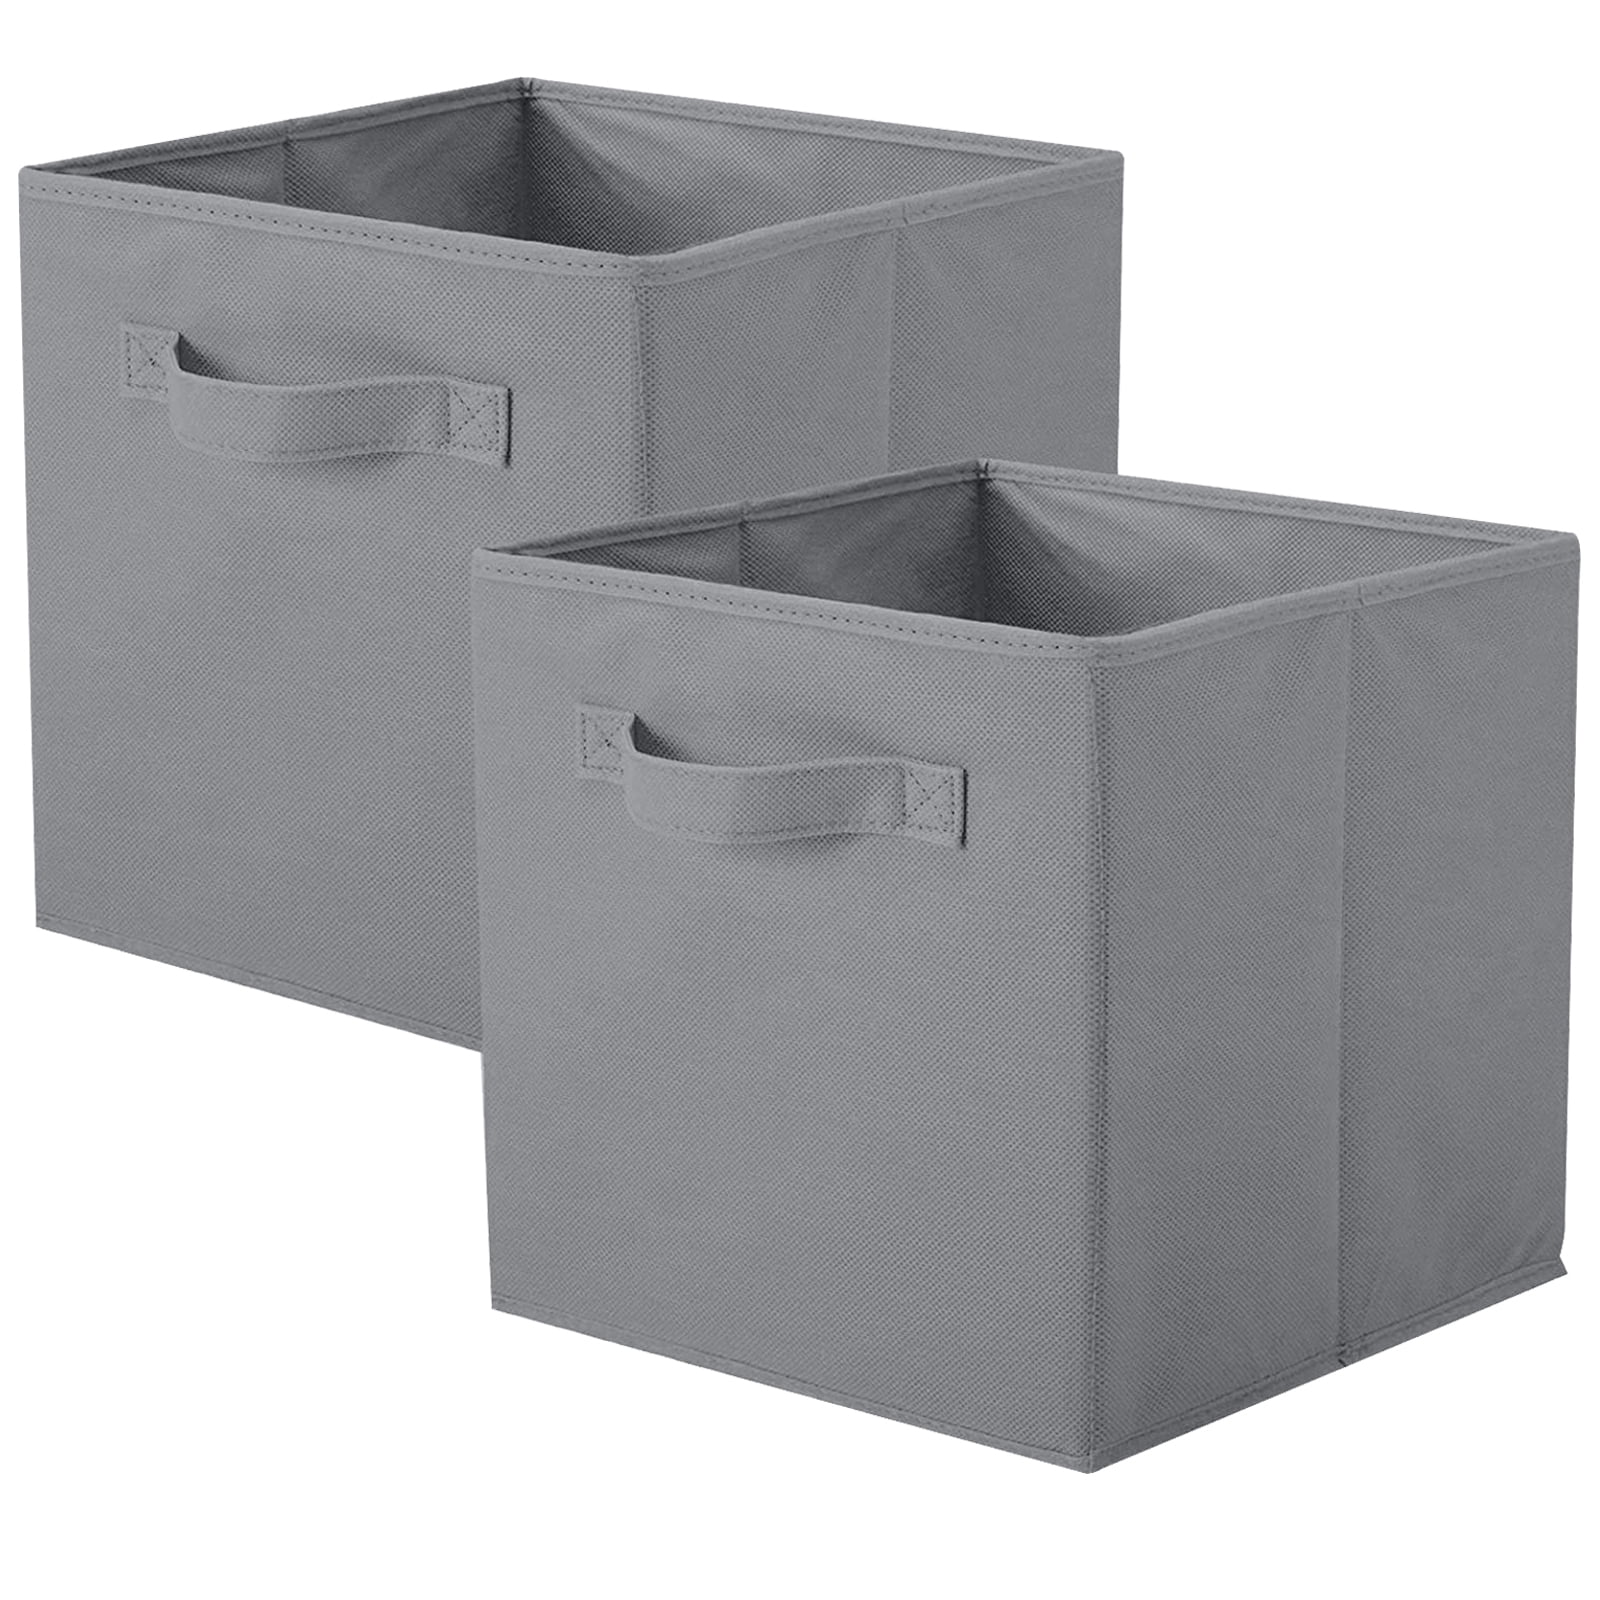 YOYTOO Foldable Fabric Storage Cube Bins, 11